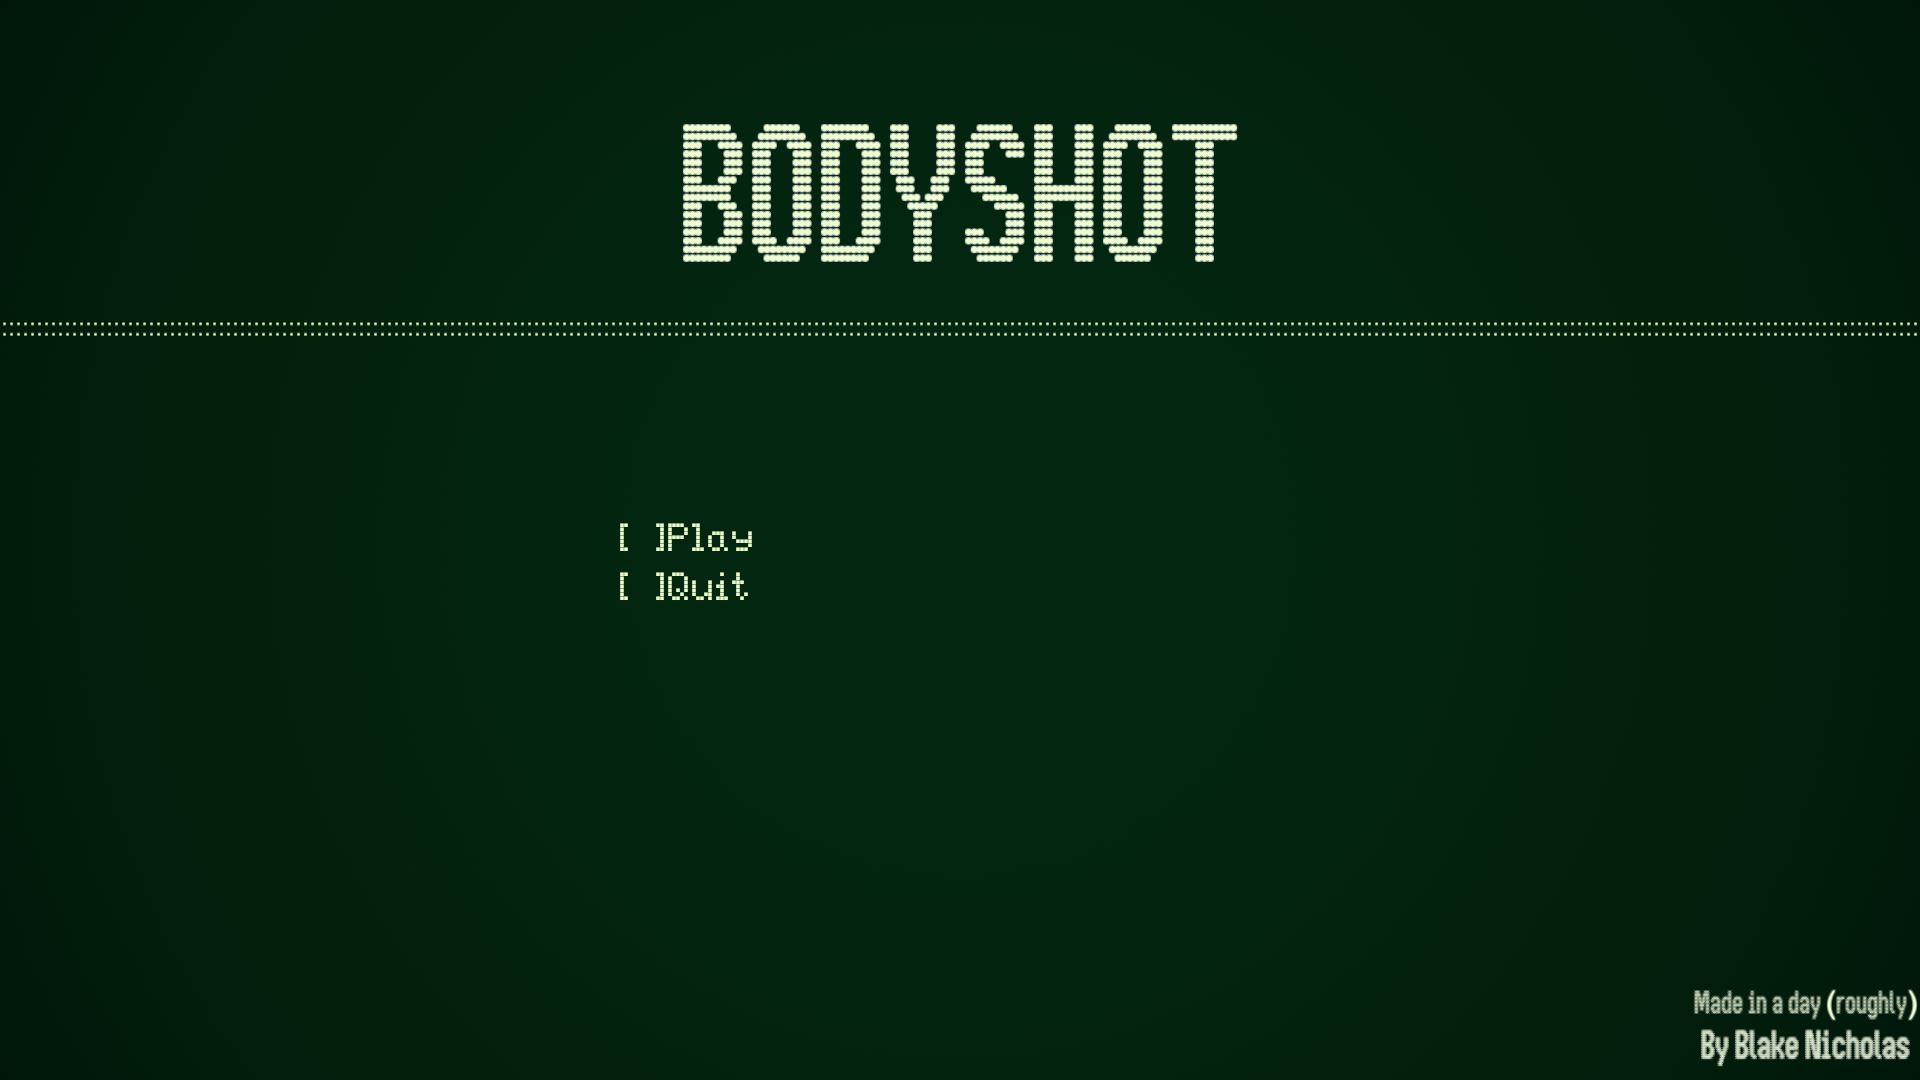 Bodyshot